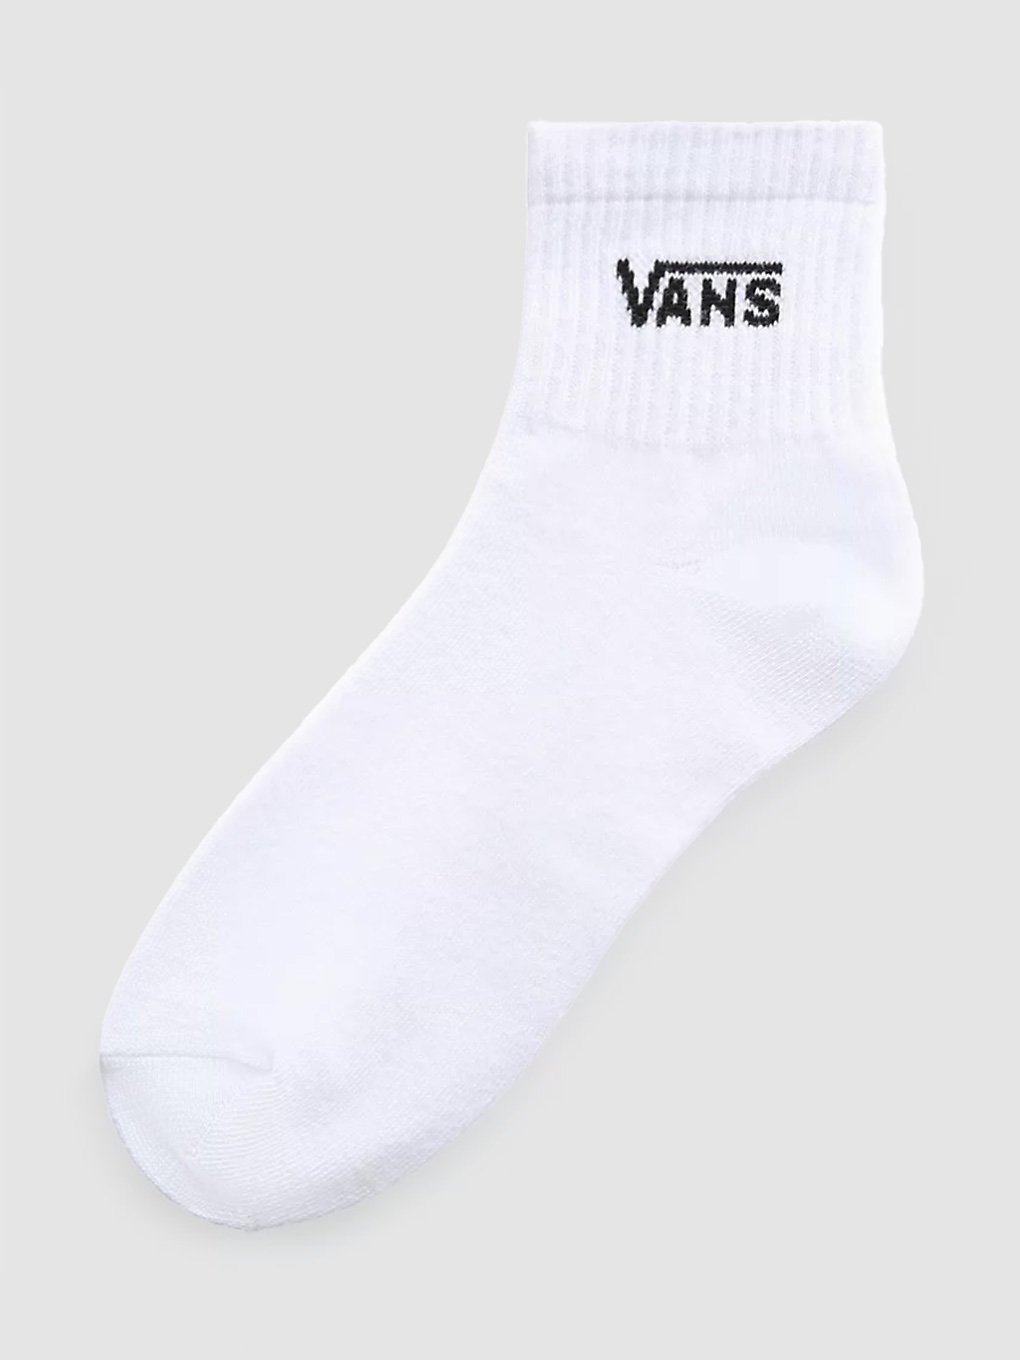 Vans Half Crew (6.5-10) Socken white kaufen